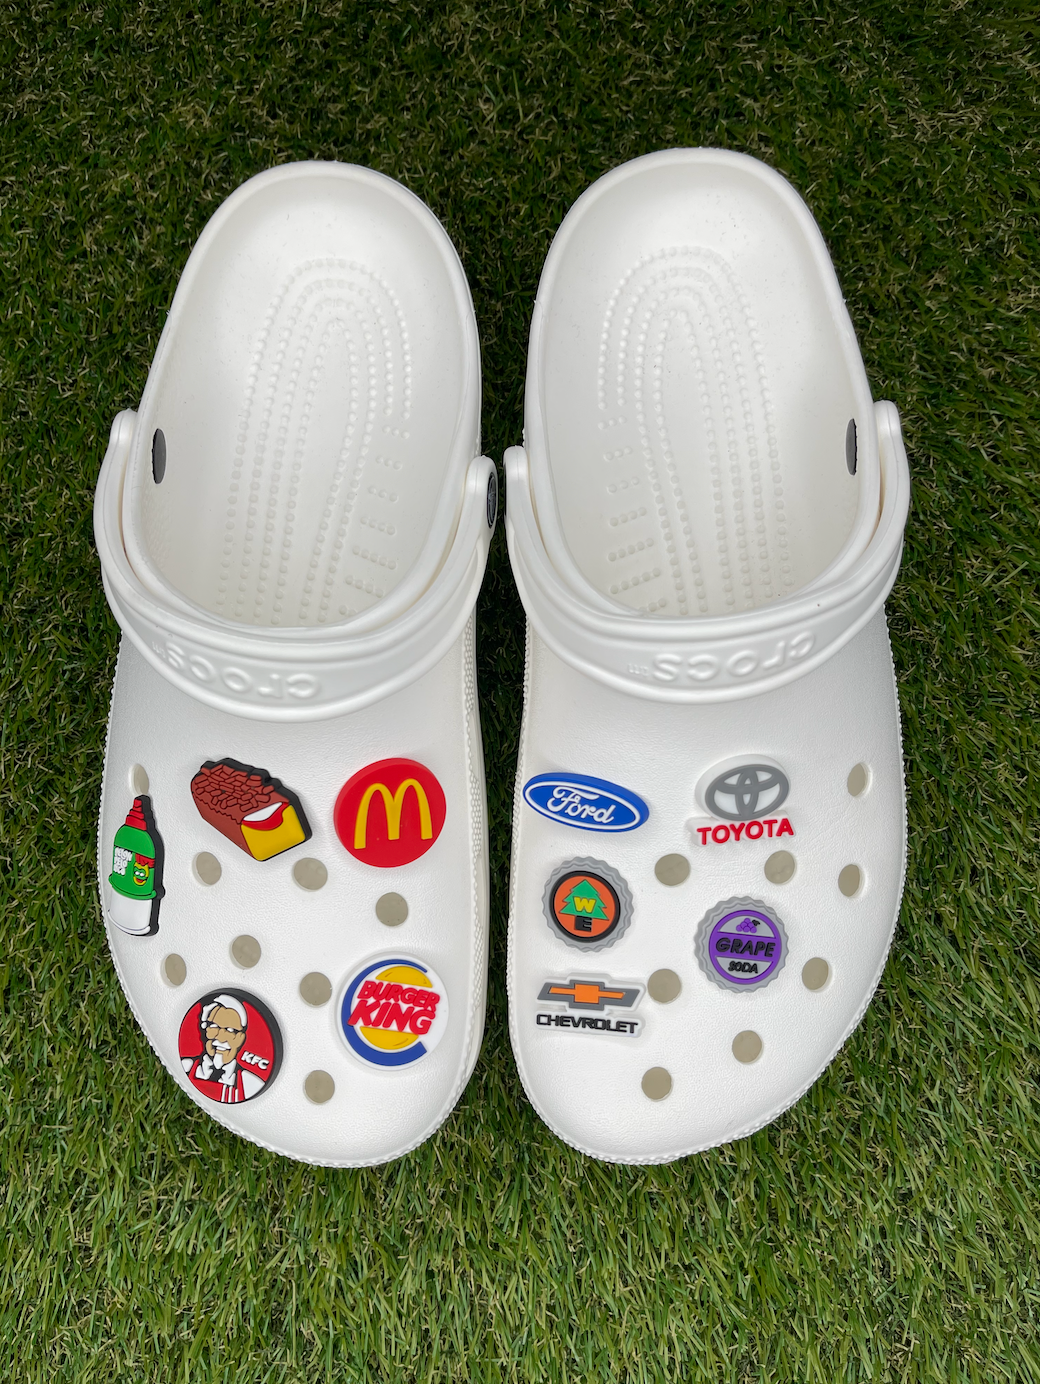 McDonalds" Croc Charm –